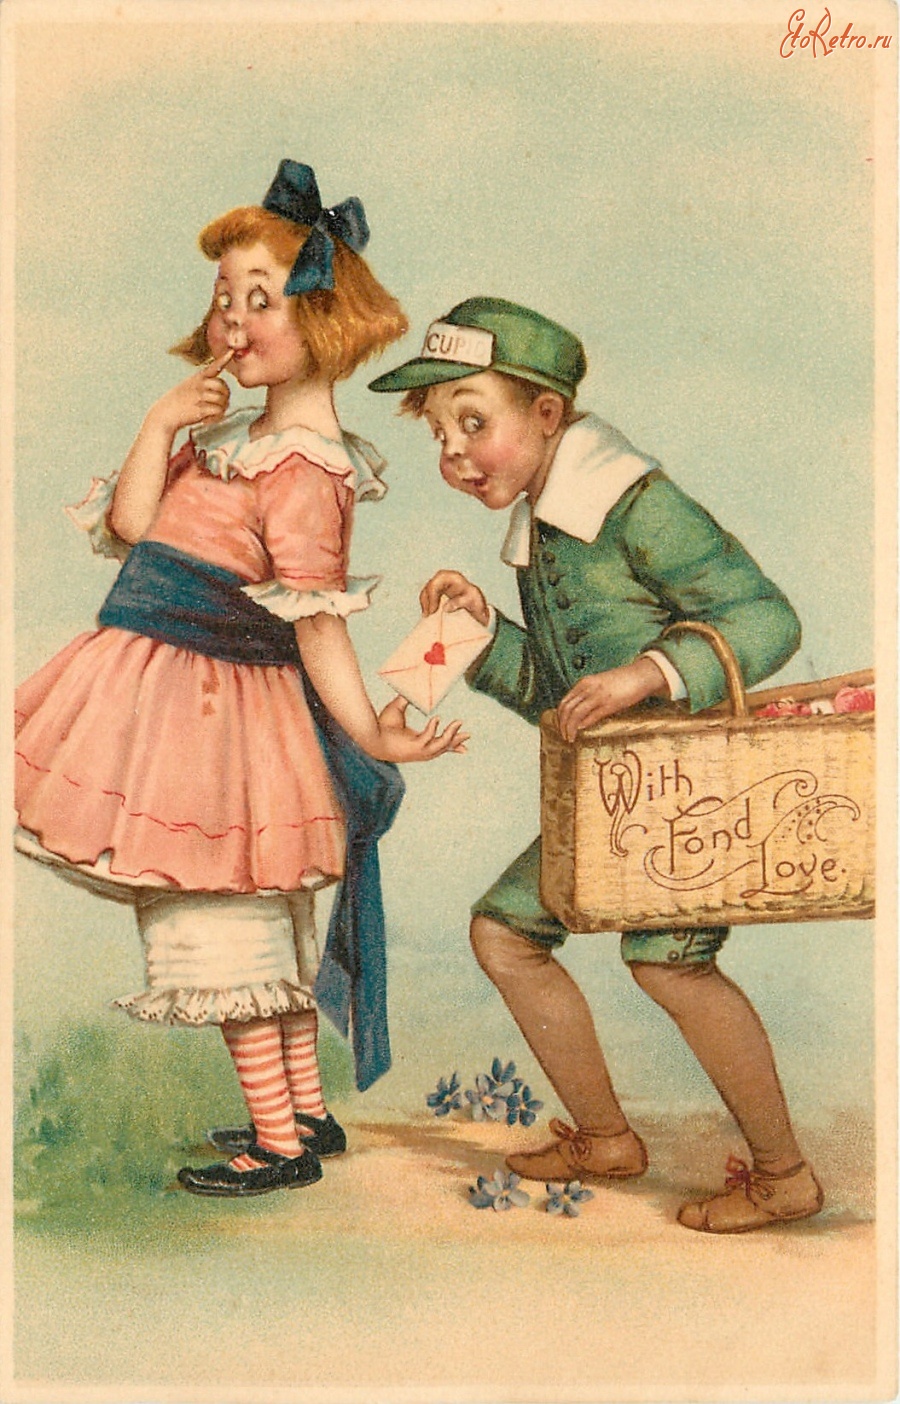 Ретро открытки - С любовью. Девочка в розовом платье и мальчик в униформе